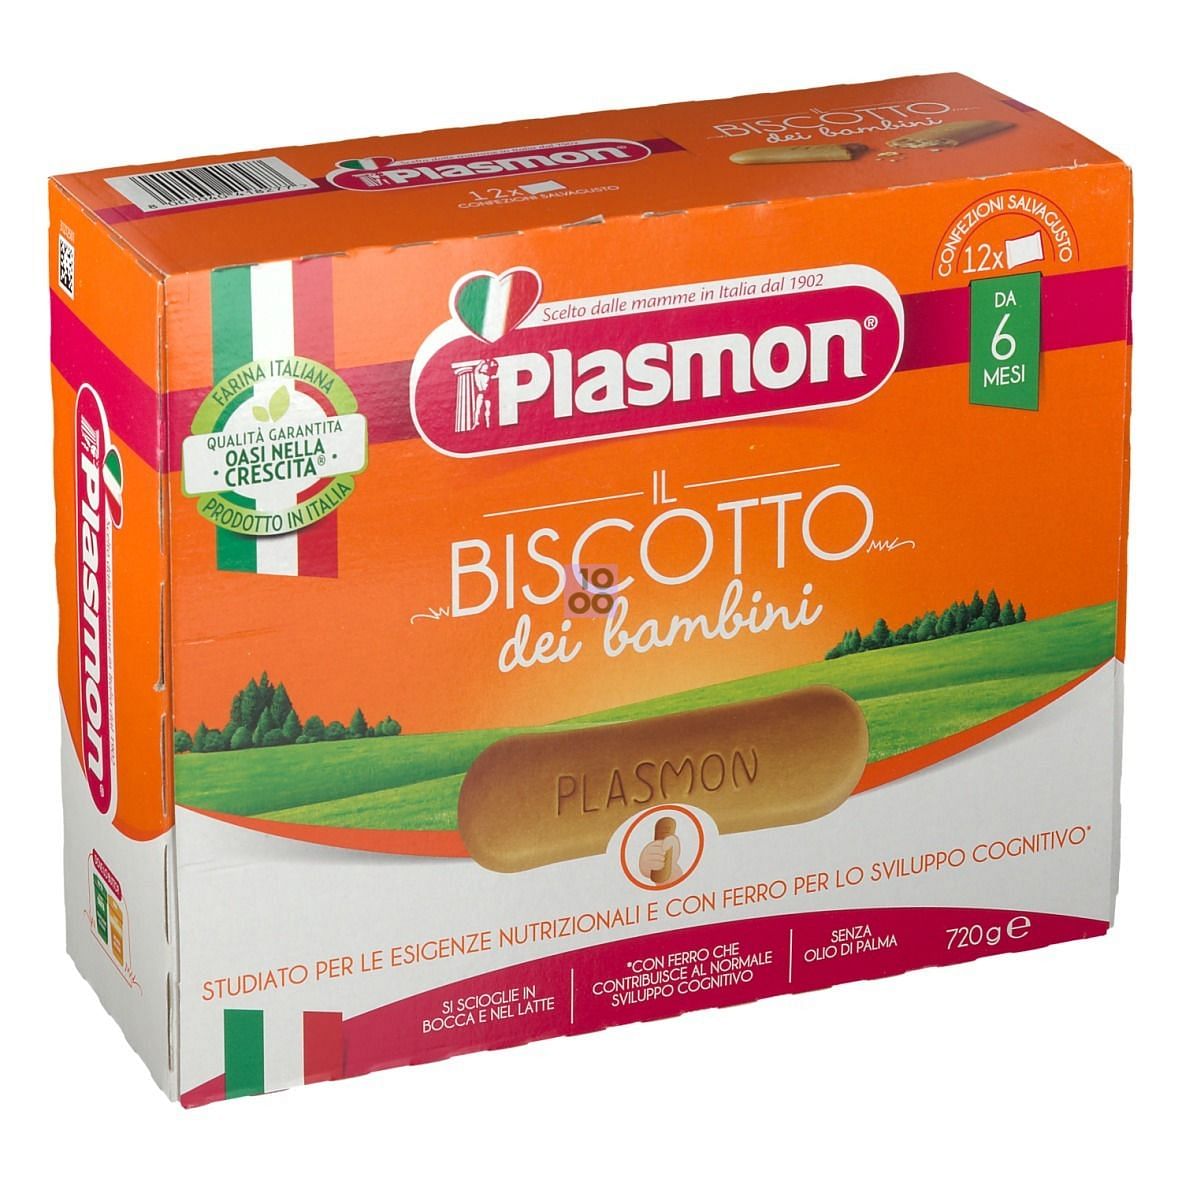 Plasmon Biscotti 720 G: Utilizzo, effetti collaterali e prezzo